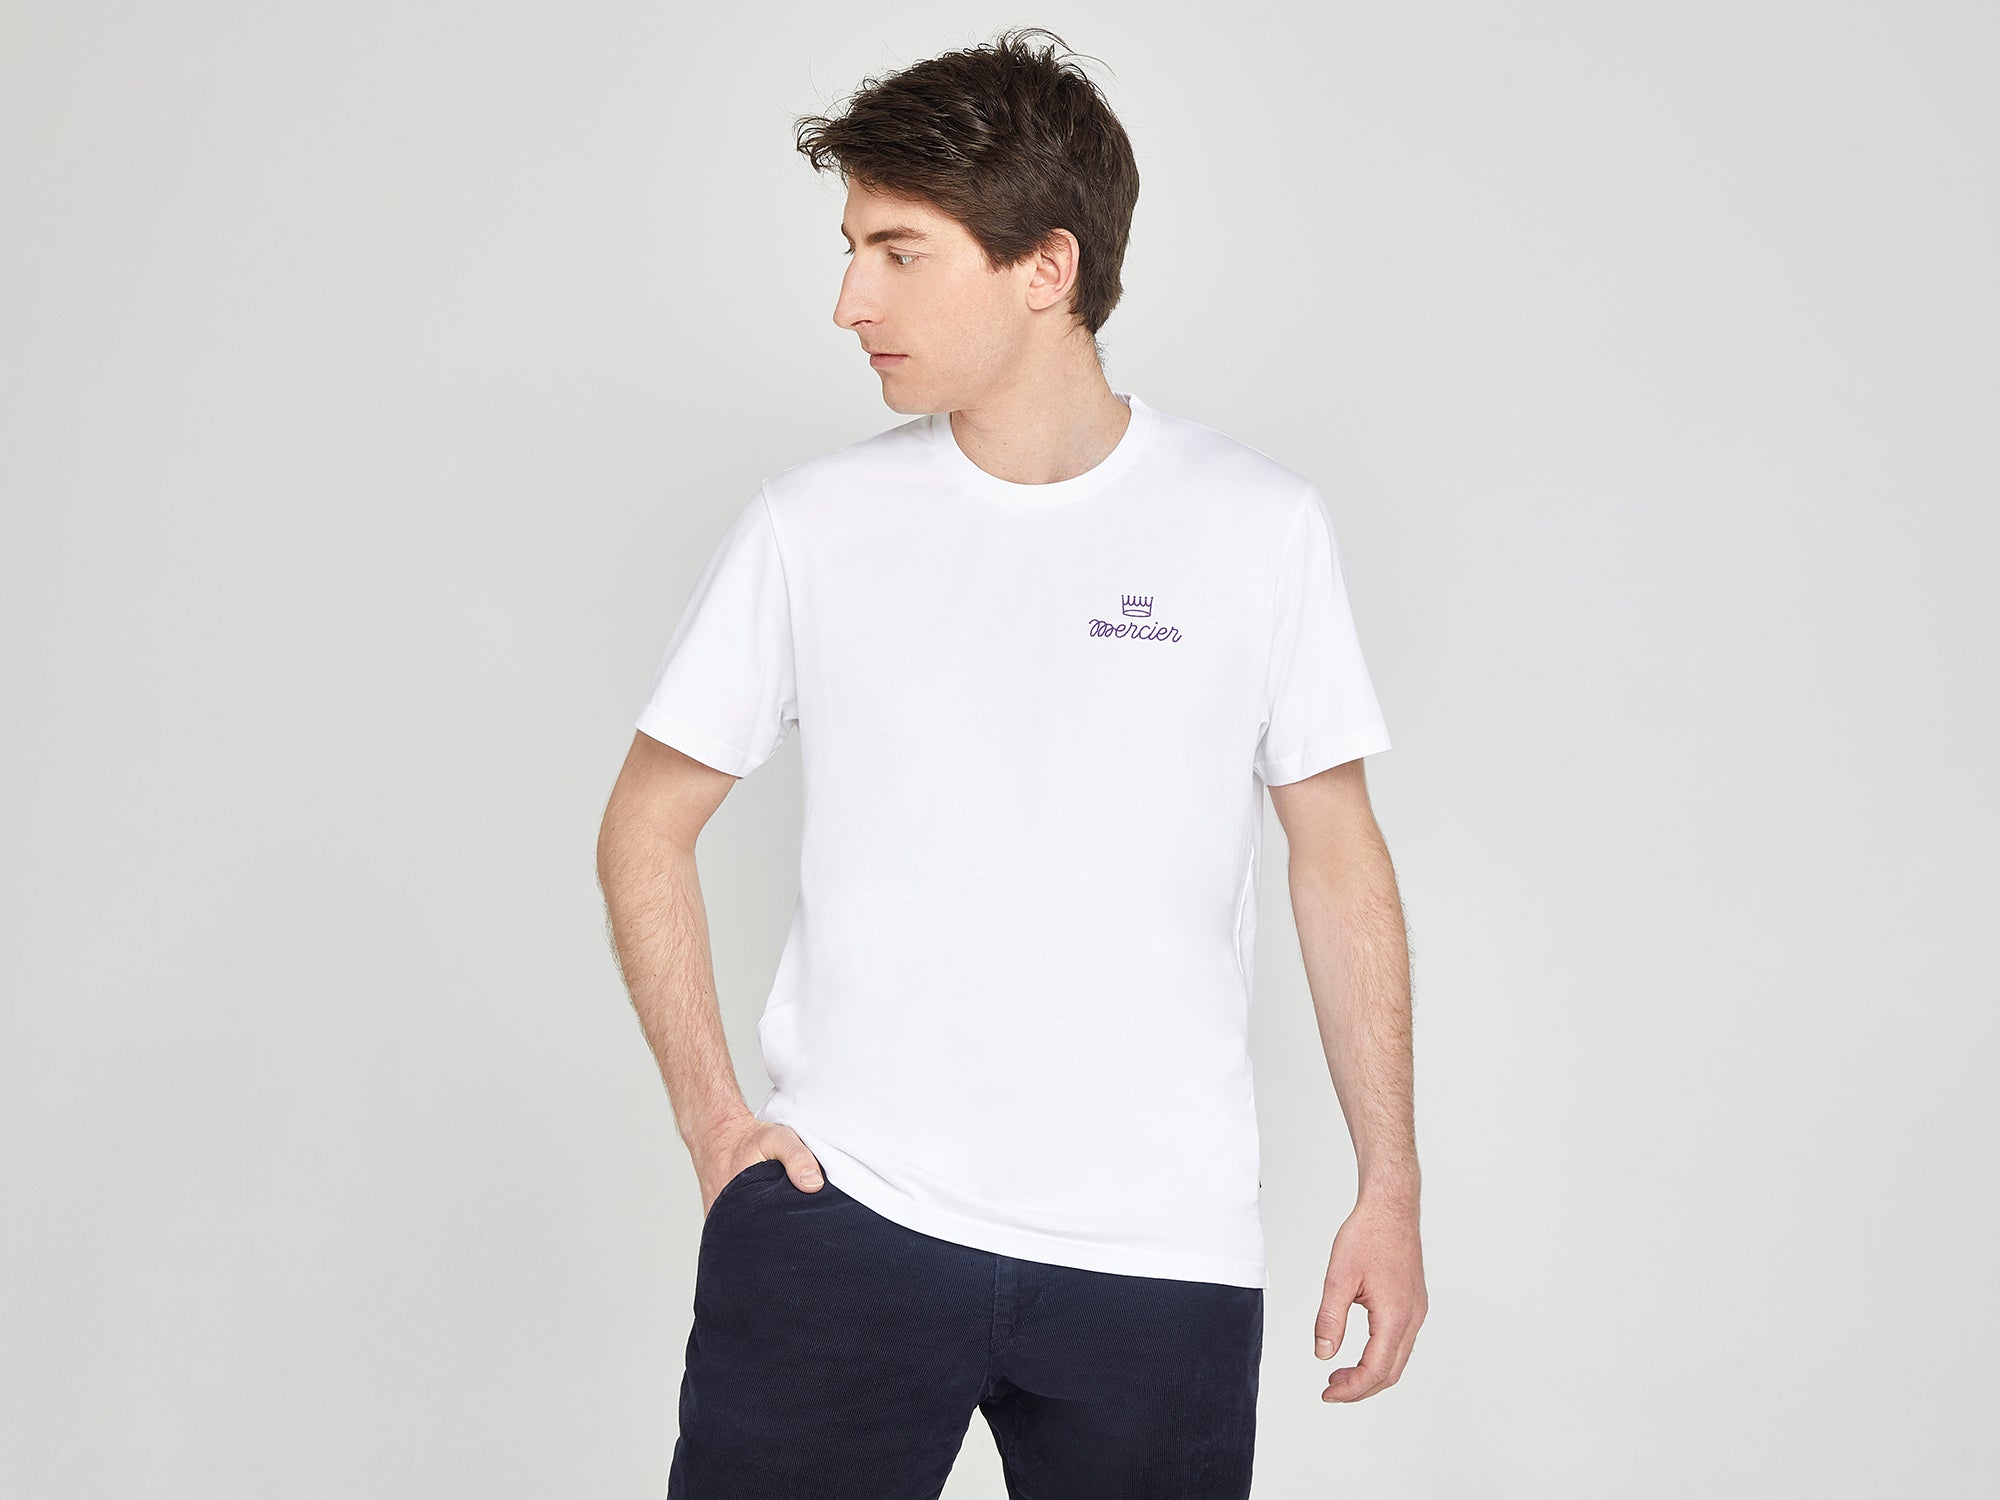 Marcel T-Shirt – Manufacture Mercier